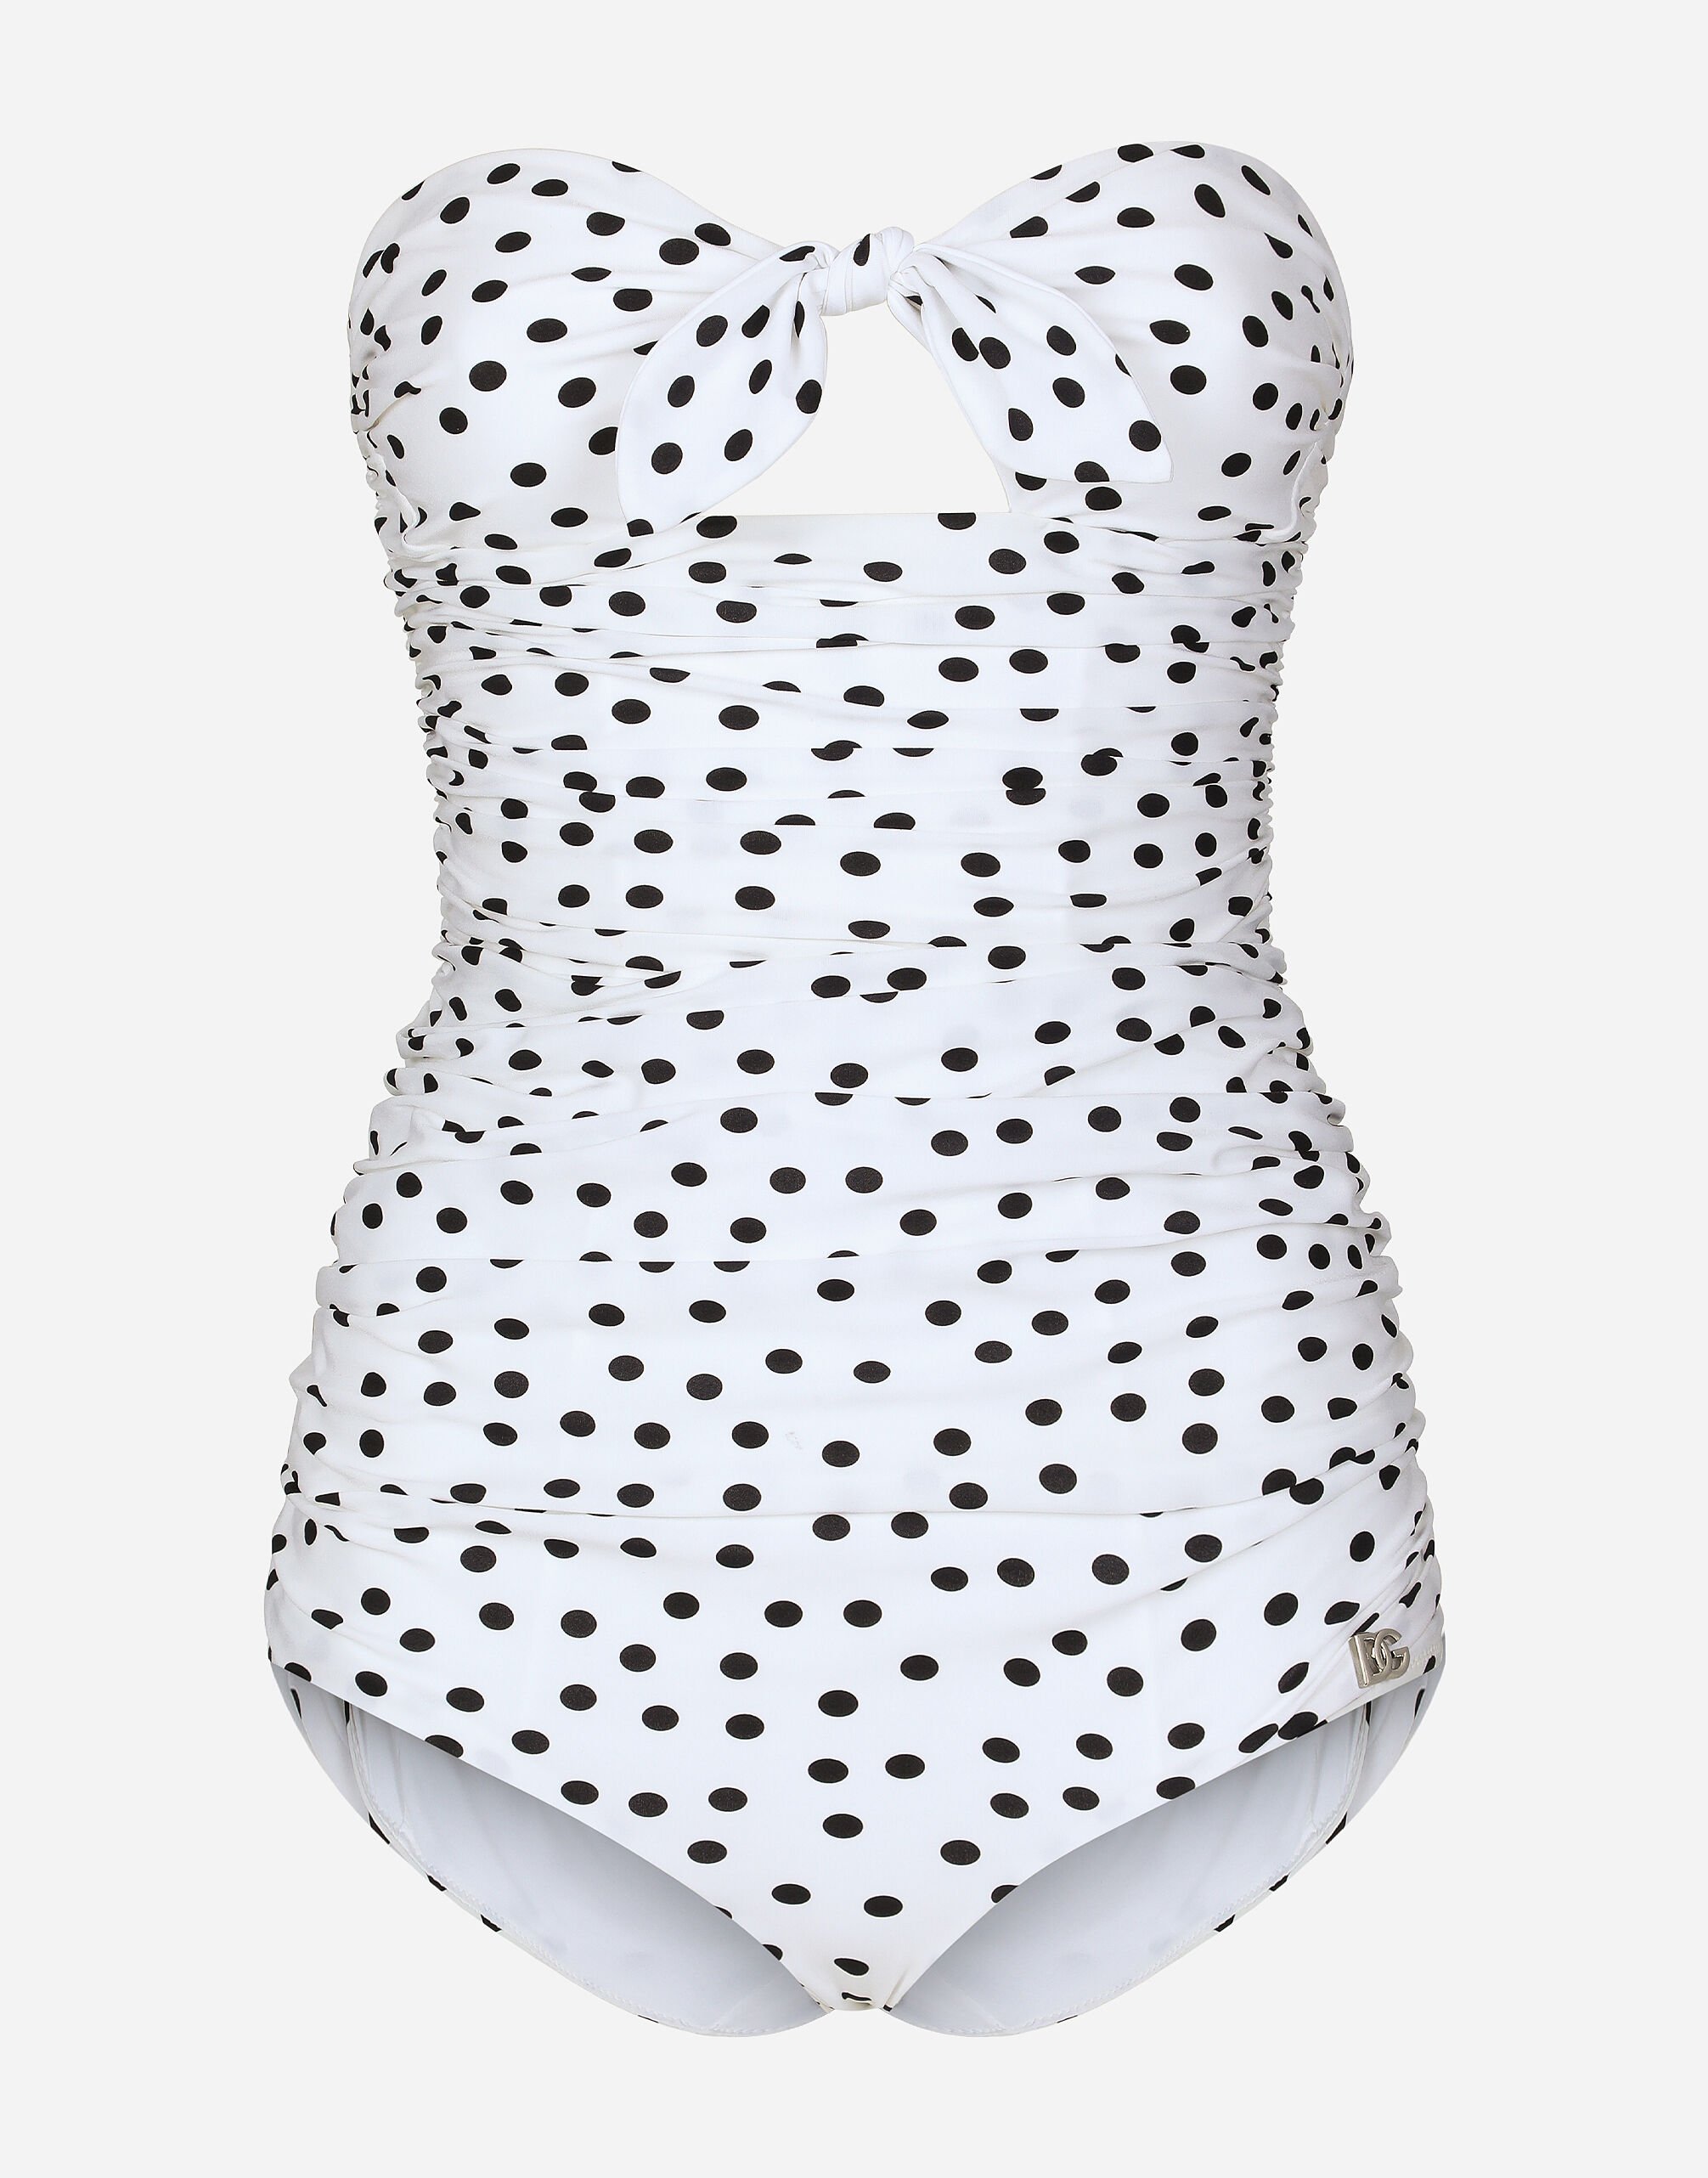 Dolce & Gabbana Polka-dot strapless one-piece swimsuit Print CQ0620AV885